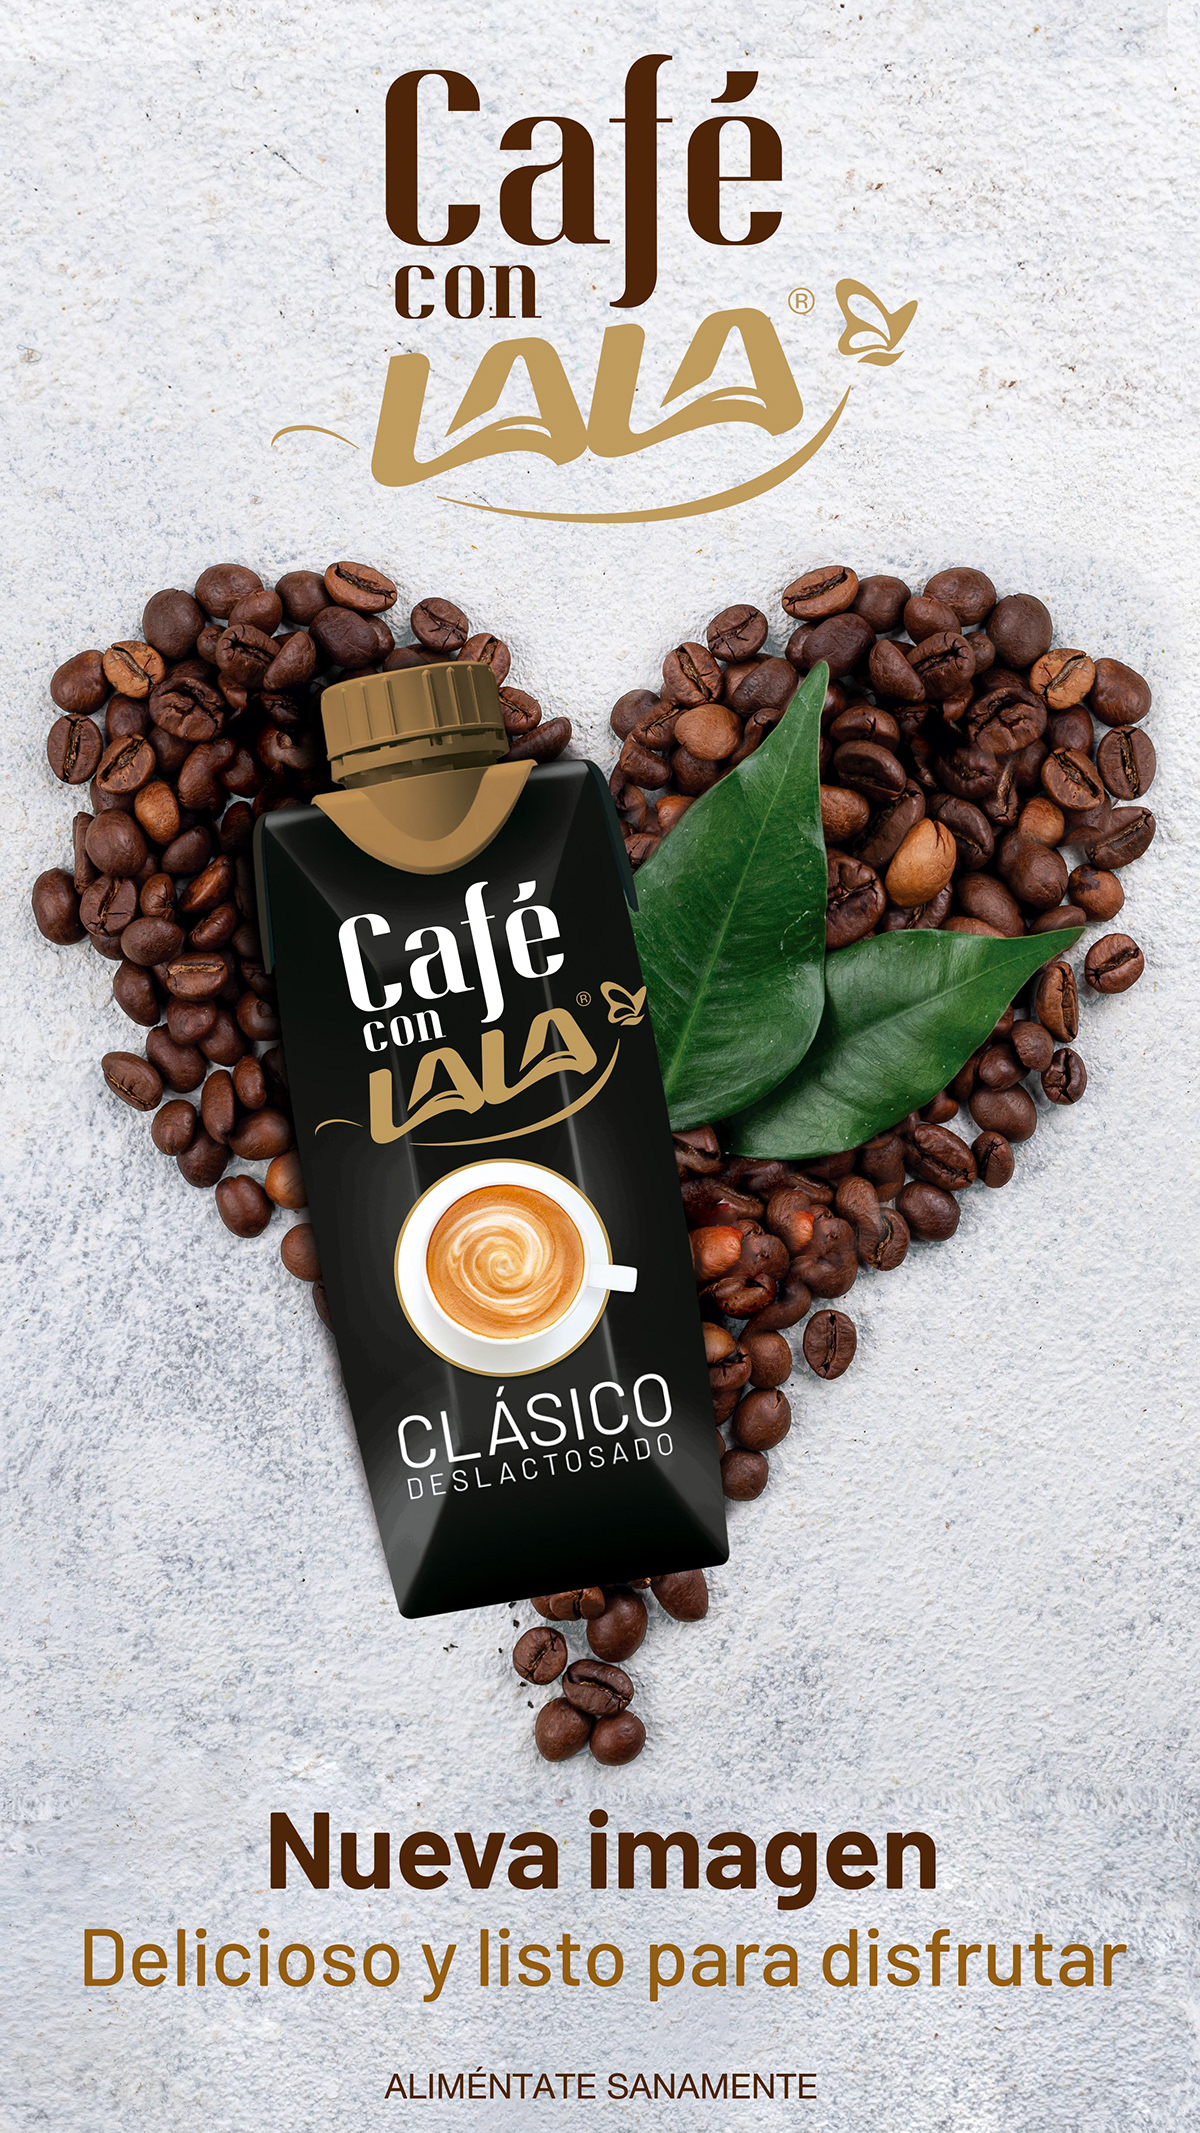 cafe cafeconlala cartel lala promocional publicidad Lisse MO MOCOSMETICS sognare